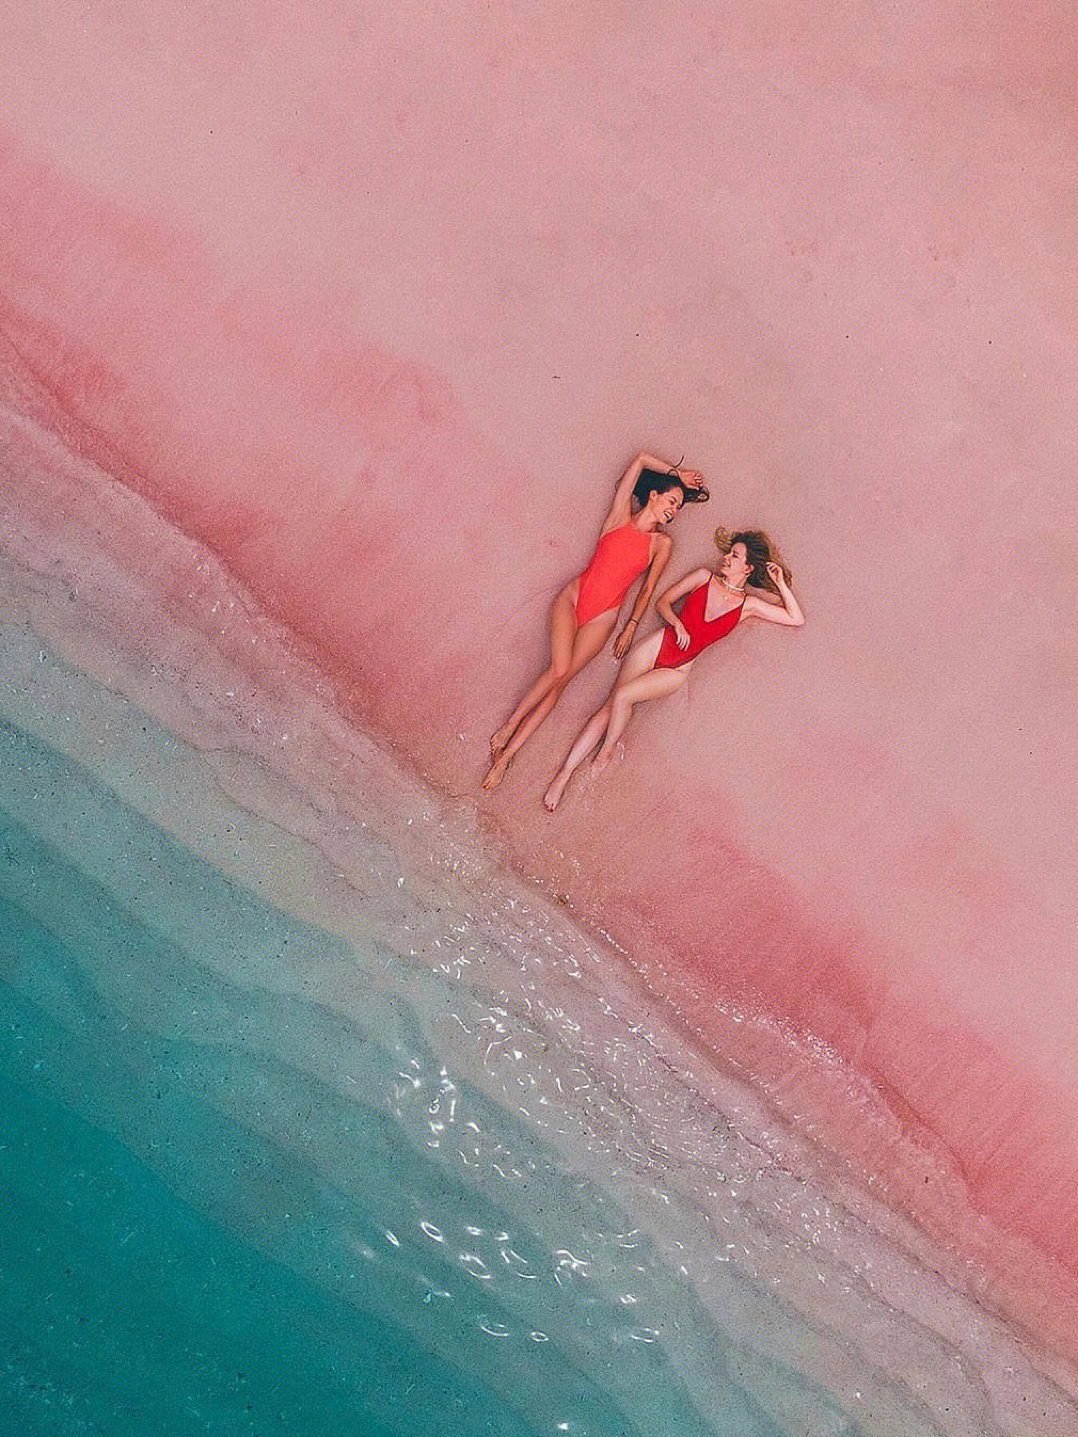 粉红细沙保持着原生态的样子,粉的干净纯粹,这里就是印尼科莫多岛